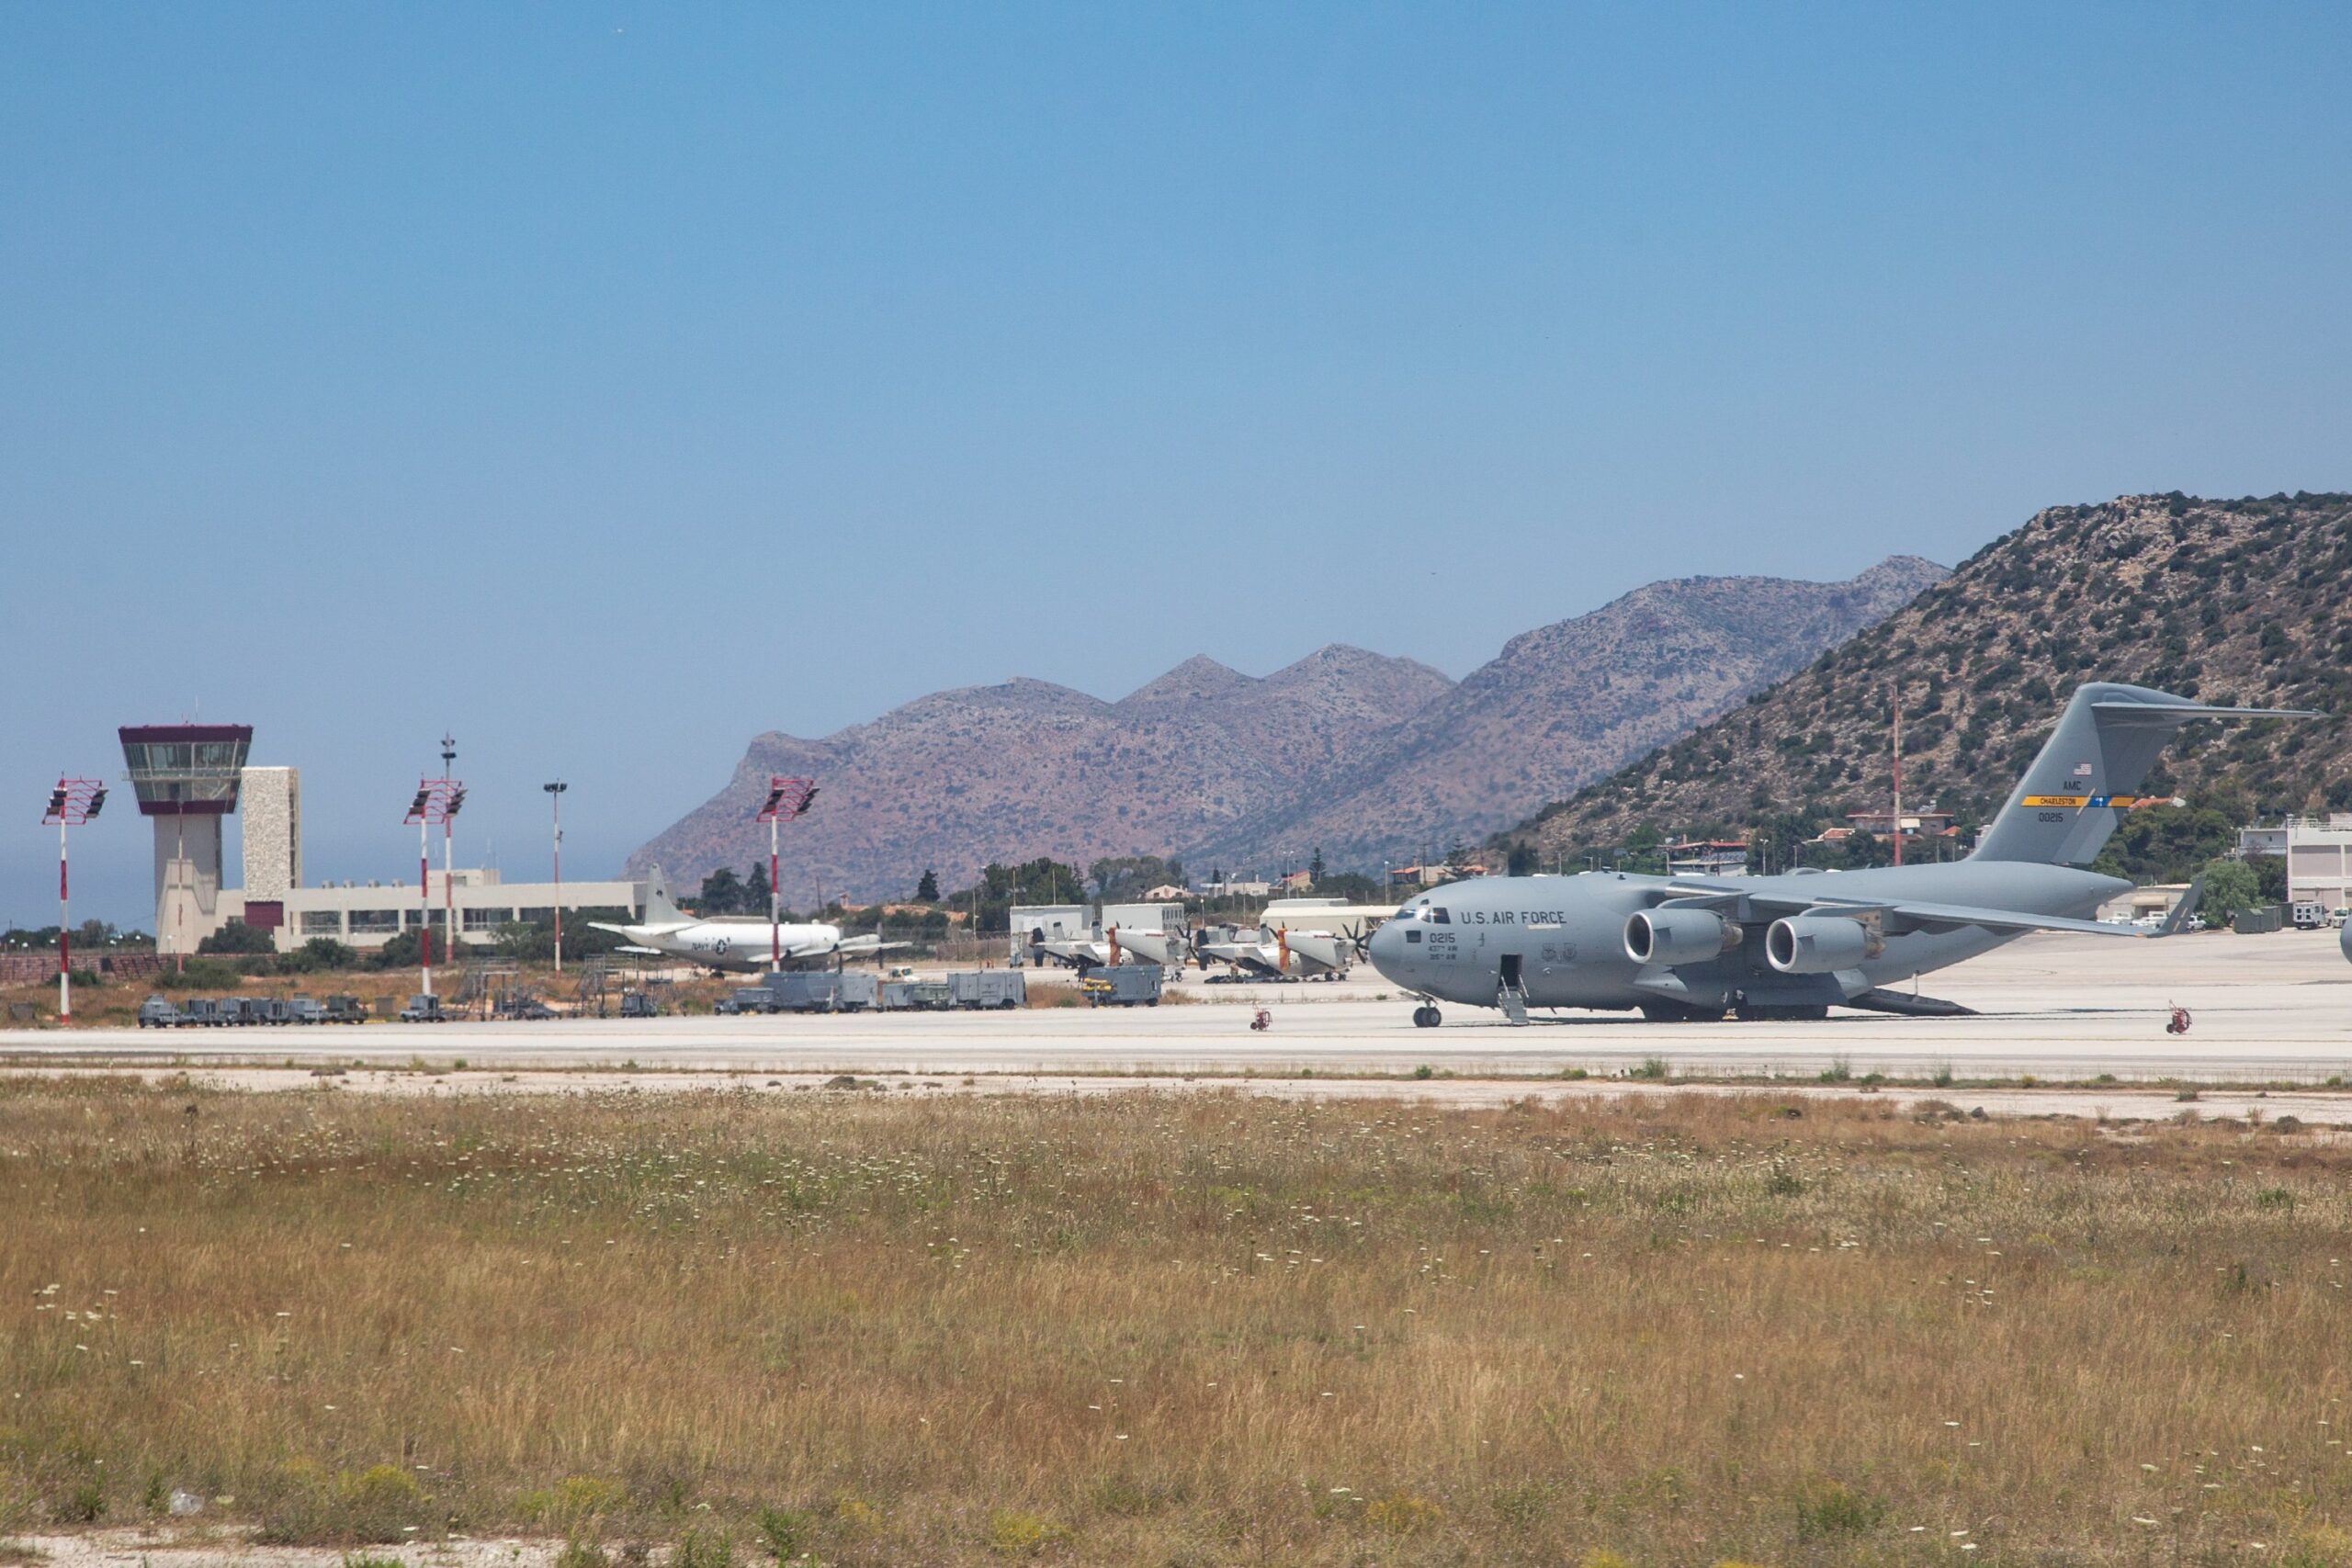 Οι ΗΠΑ ζήτησαν και δεύτερη αεροπορική βάση μετά τη Σούδα για την μεταστάθμευση αεροσκαφών τους